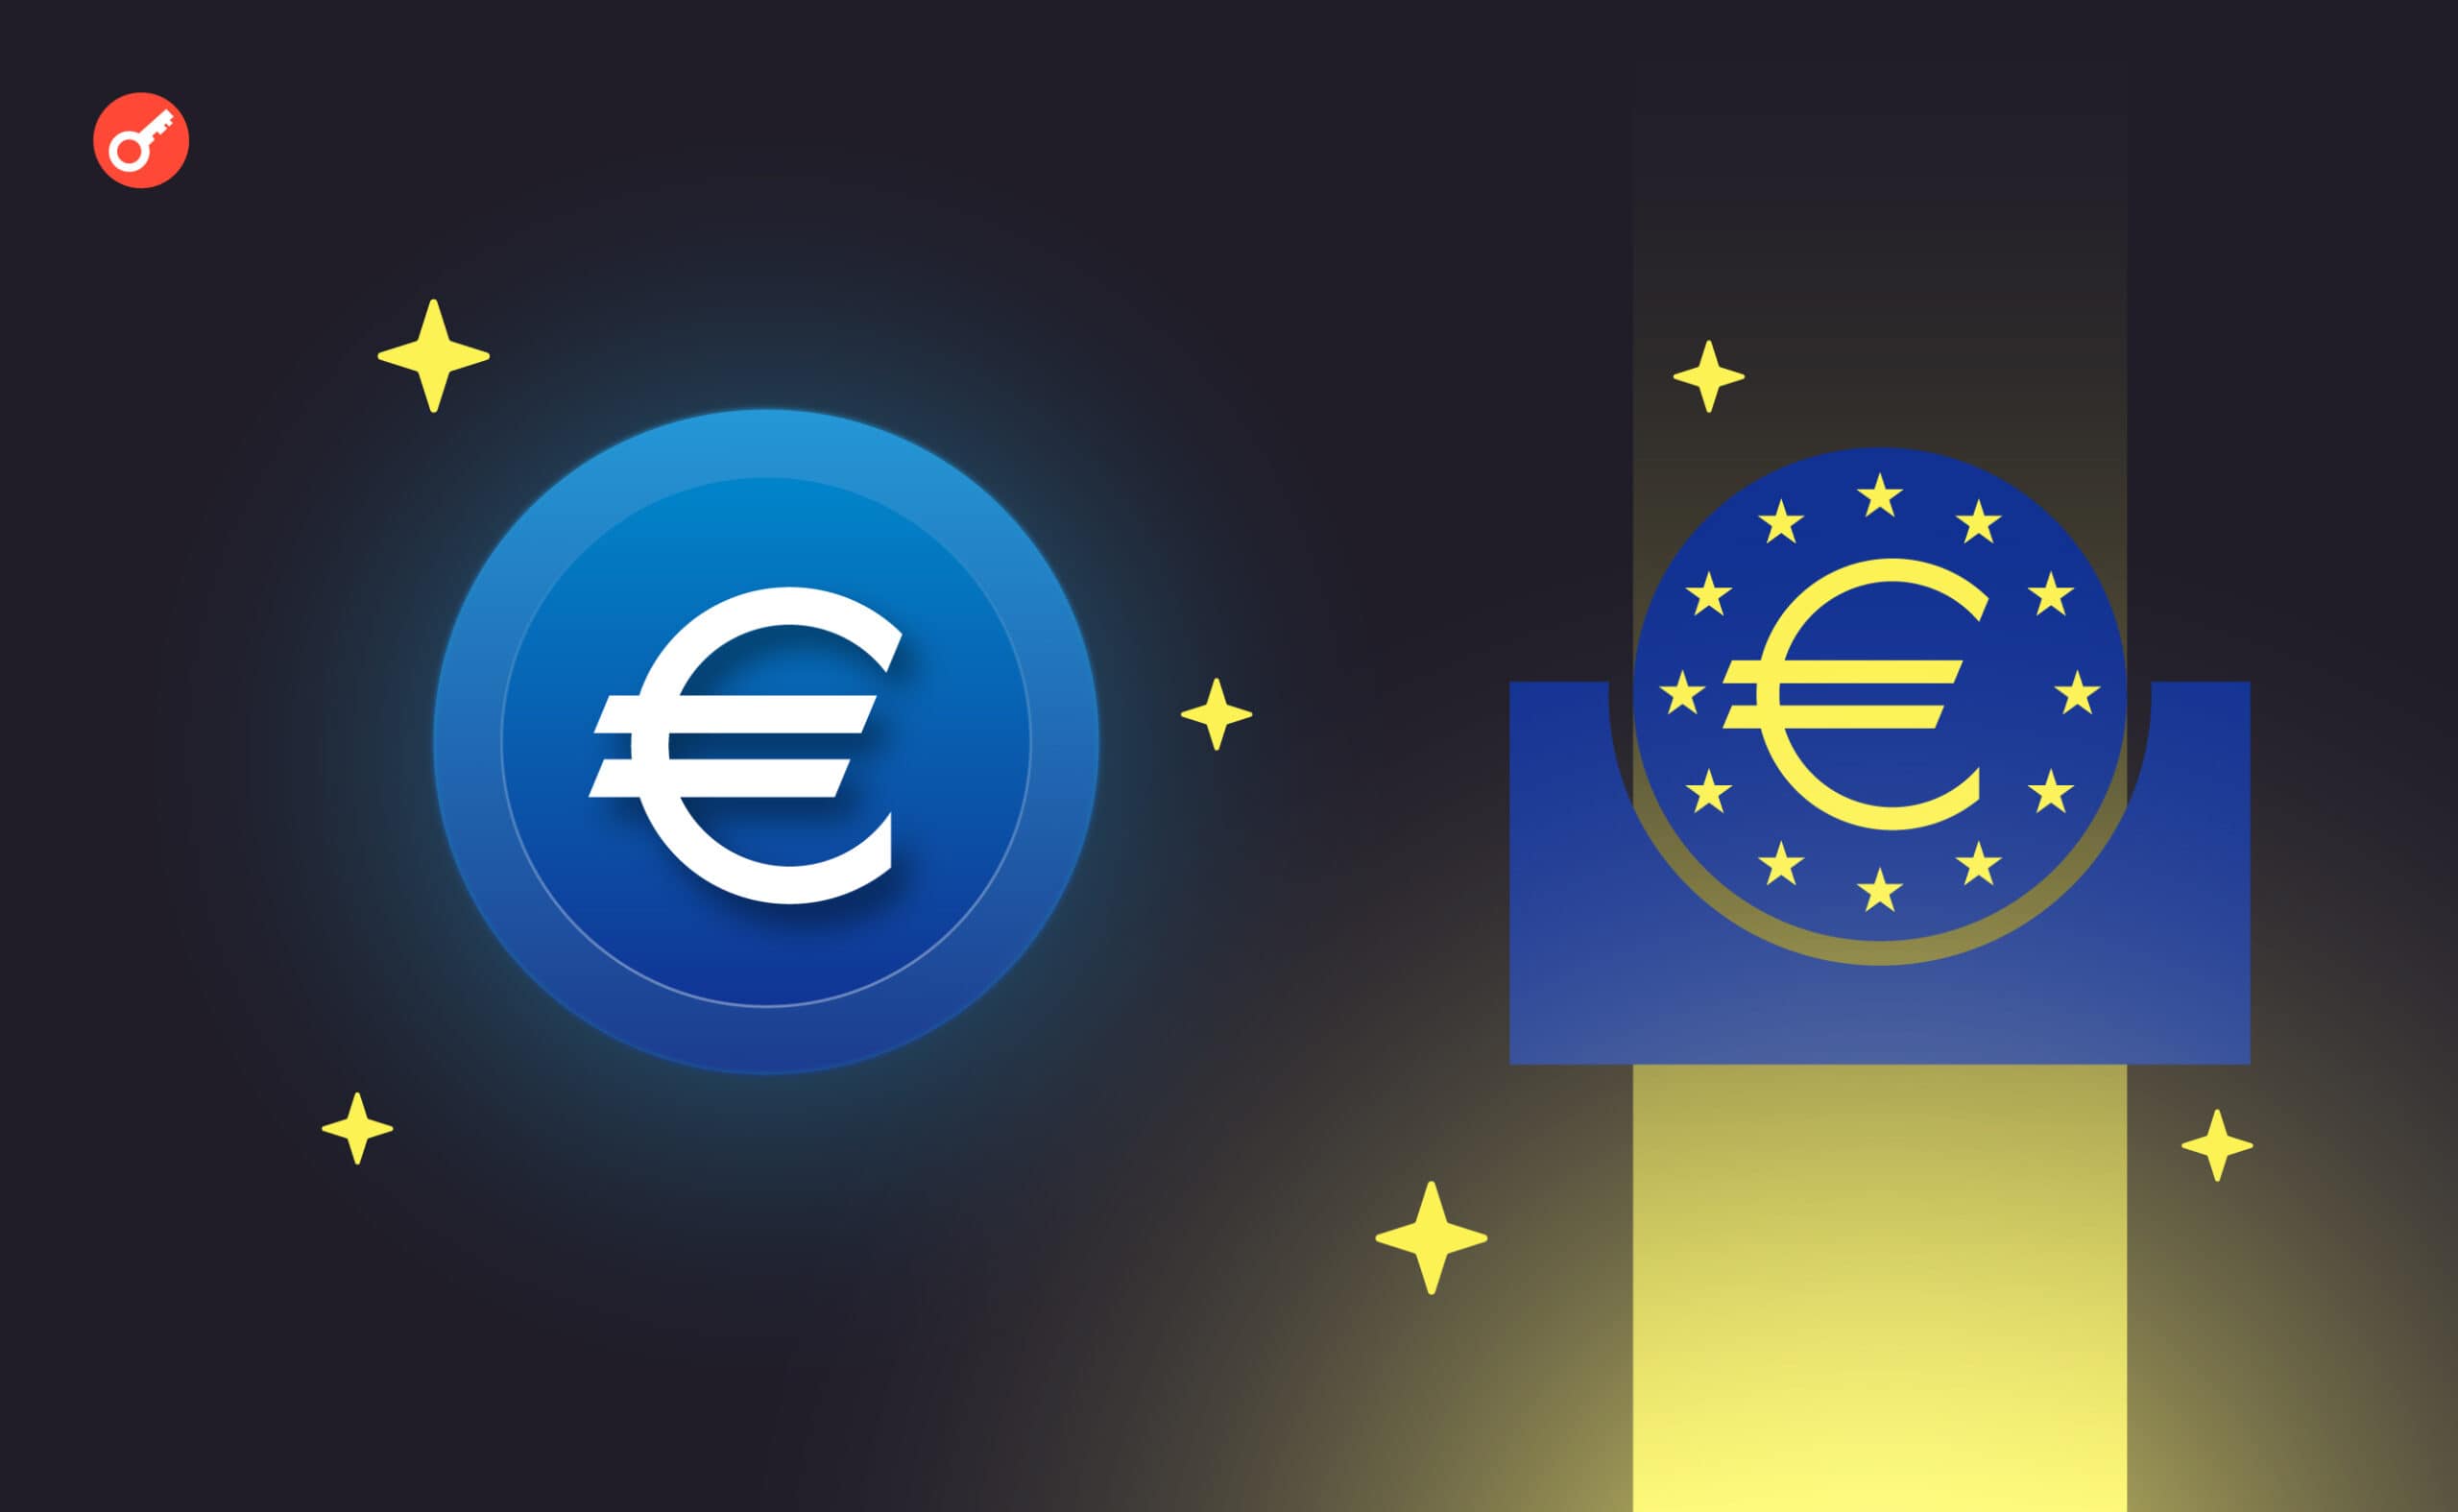 ЄЦБ перейде до наступного етапу реалізації проекту цифрового євро. Головний колаж новини.